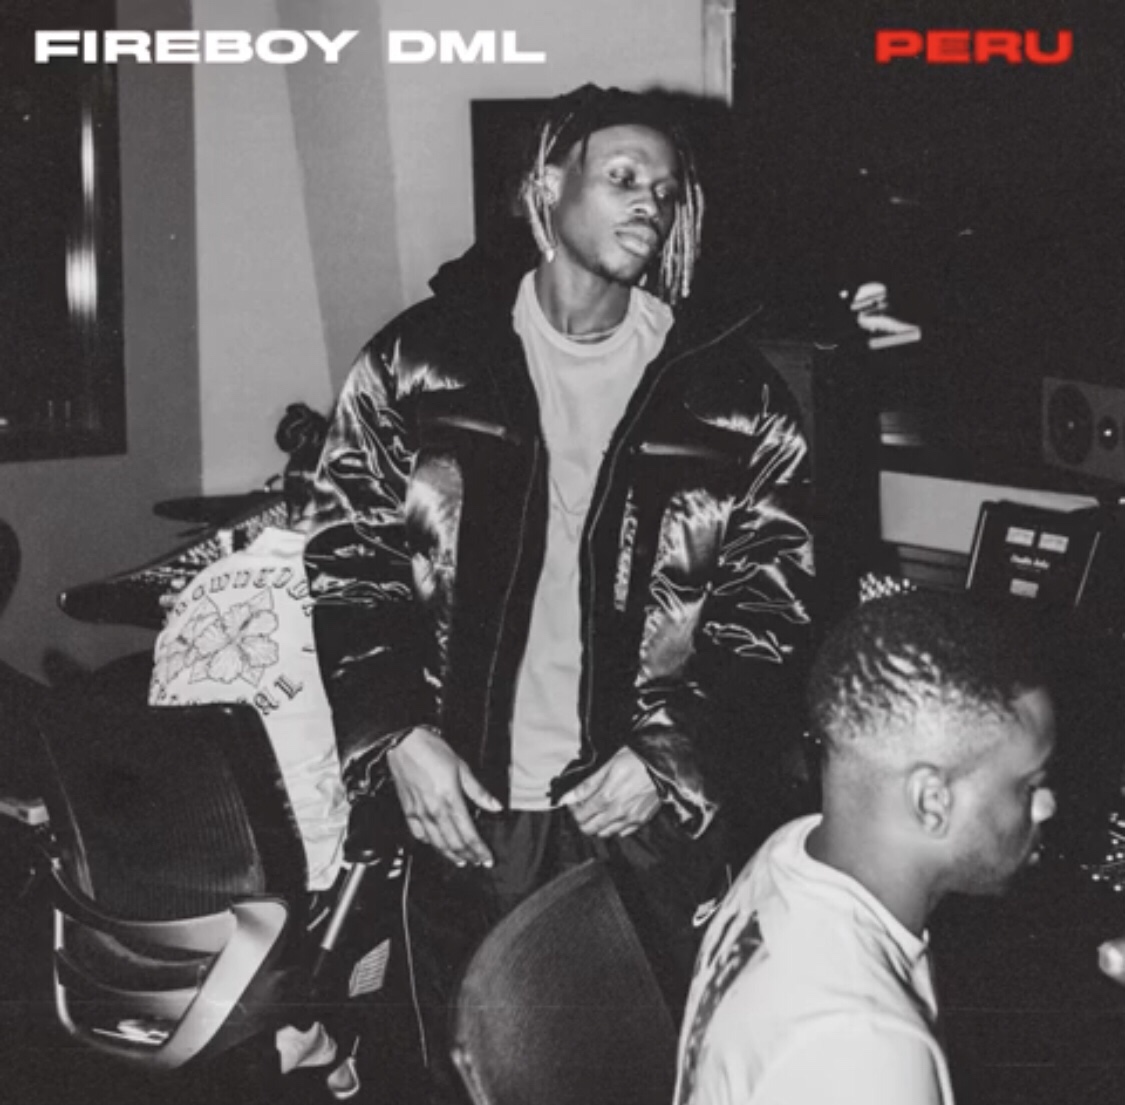 Download Fireboy DML - Peru